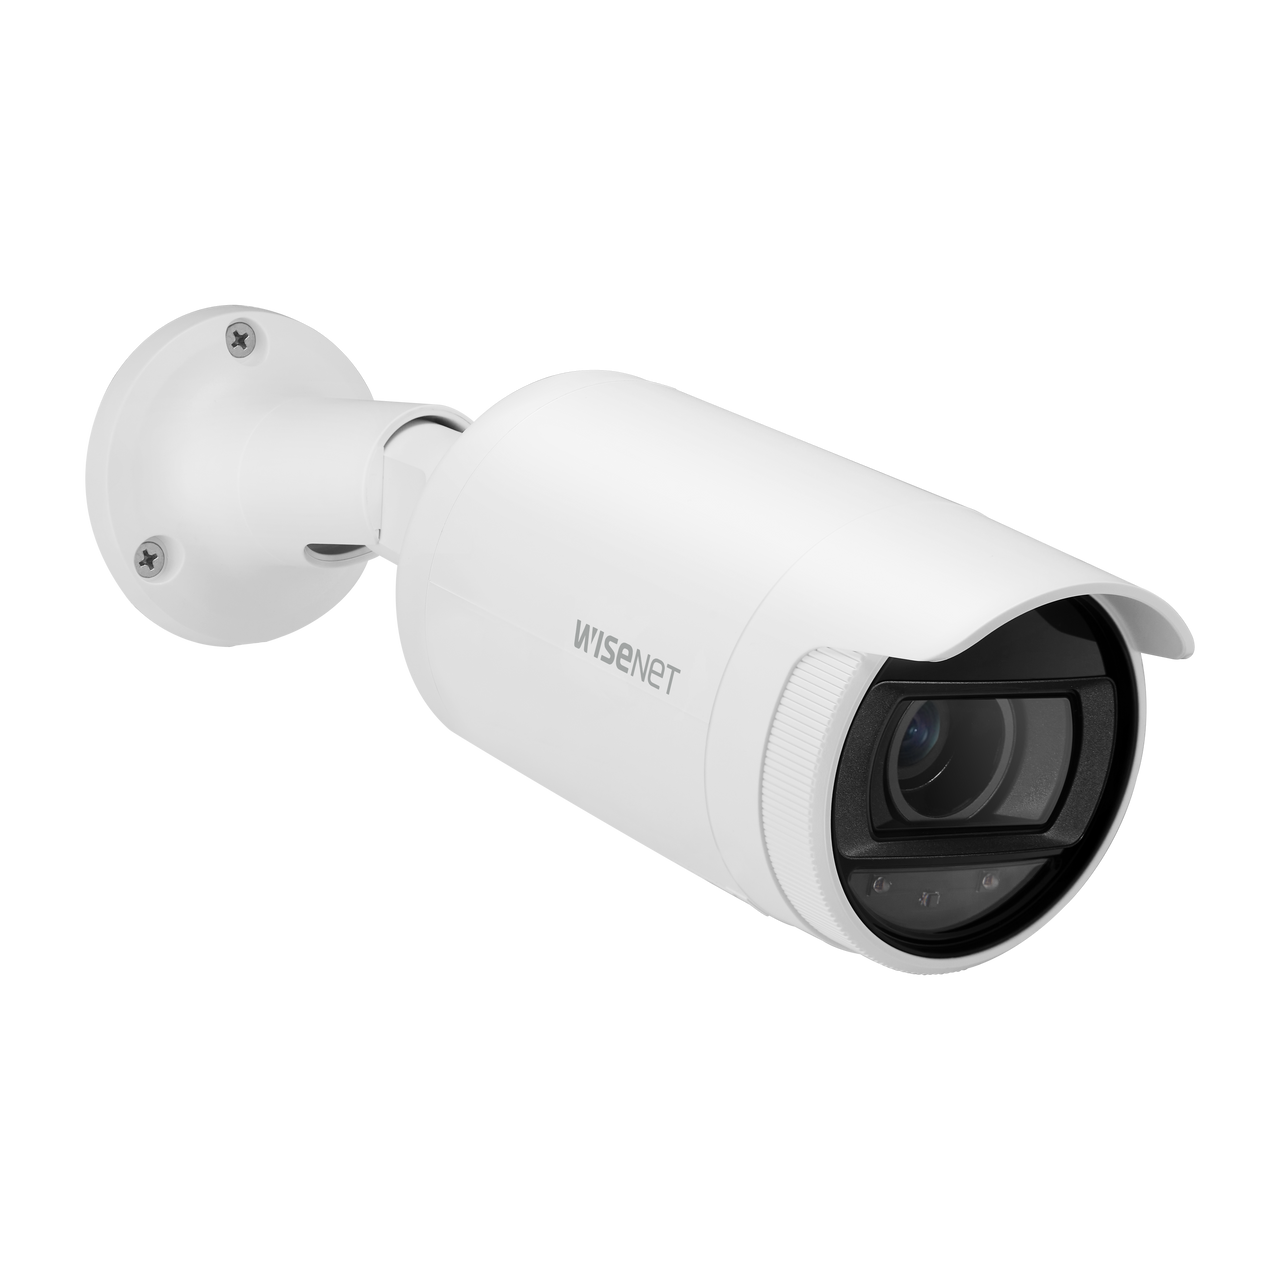 最も安い新しいスタイル △ Wisenet IRバレットカメラ QNO-6012R 未使用_01 セキュリティ FONDOBLAKA